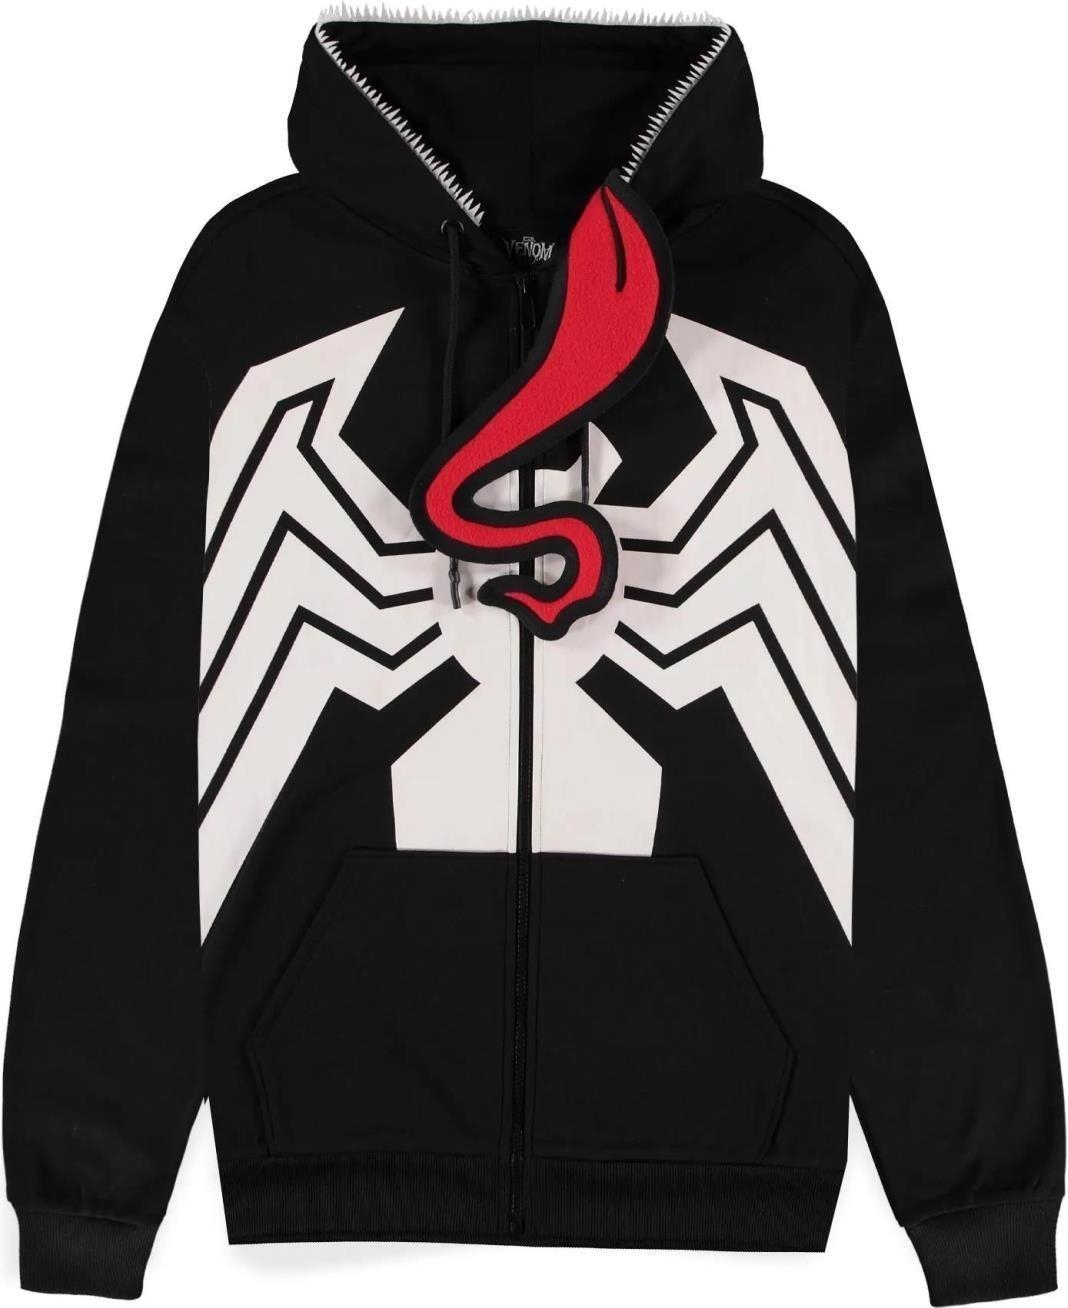 Abbigliamento Venom 2: Novelty Premium Black (Felpa Con Cappuccio Unisex Tg. 2XL) NUOVO SIGILLATO, EDIZIONE DEL 02/11/2023 SUBITO DISPONIBILE